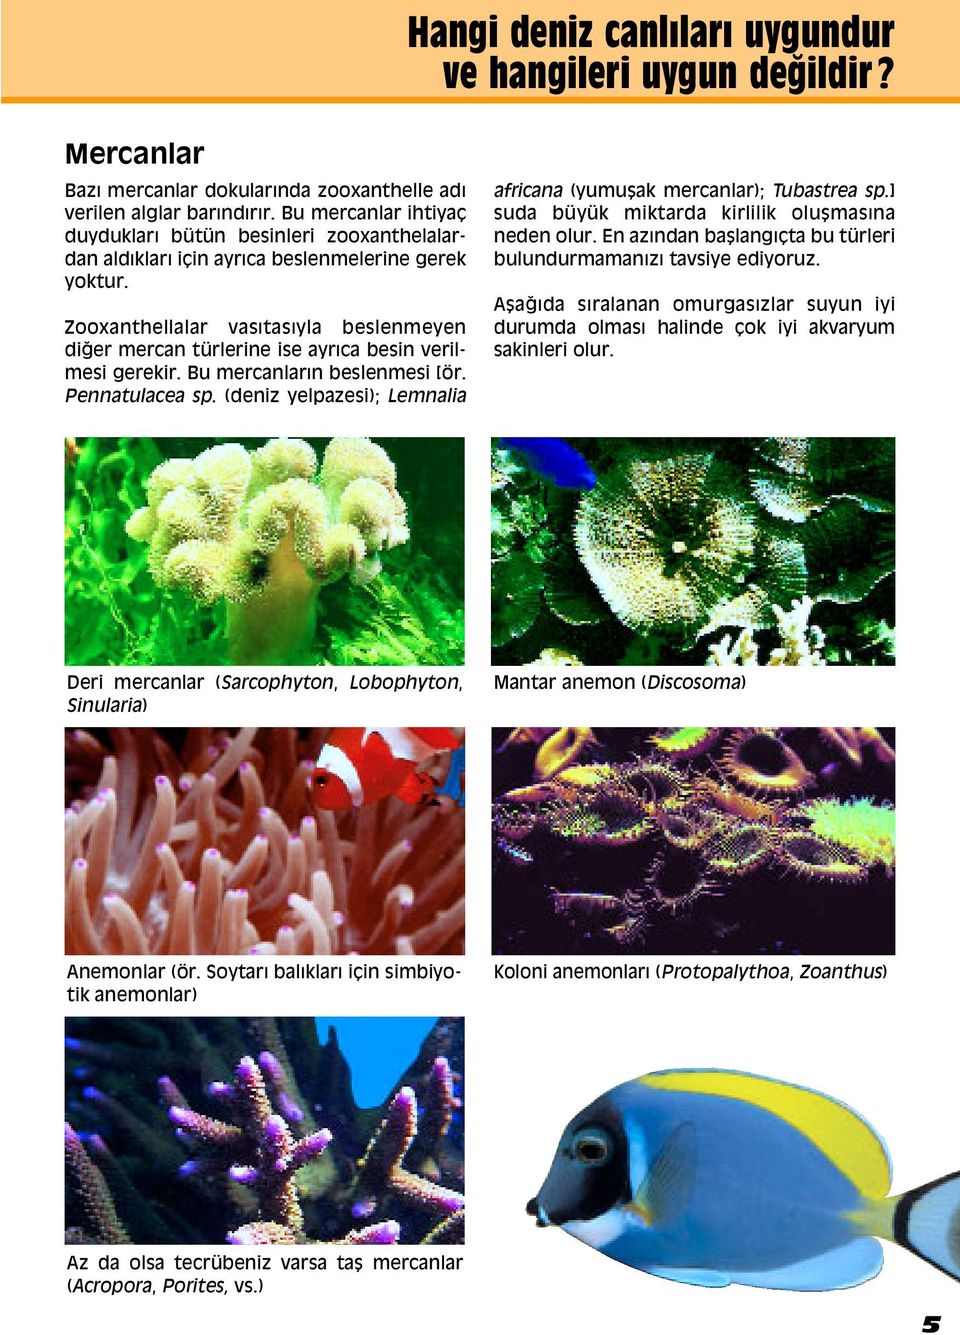 Zooxanthellalar vasıtasıyla beslenmeyen diappleer mercan türlerine ise ayrıca besin verilmesi gerekir. Bu mercanların beslenmesi [ör. Pennatulacea sp.